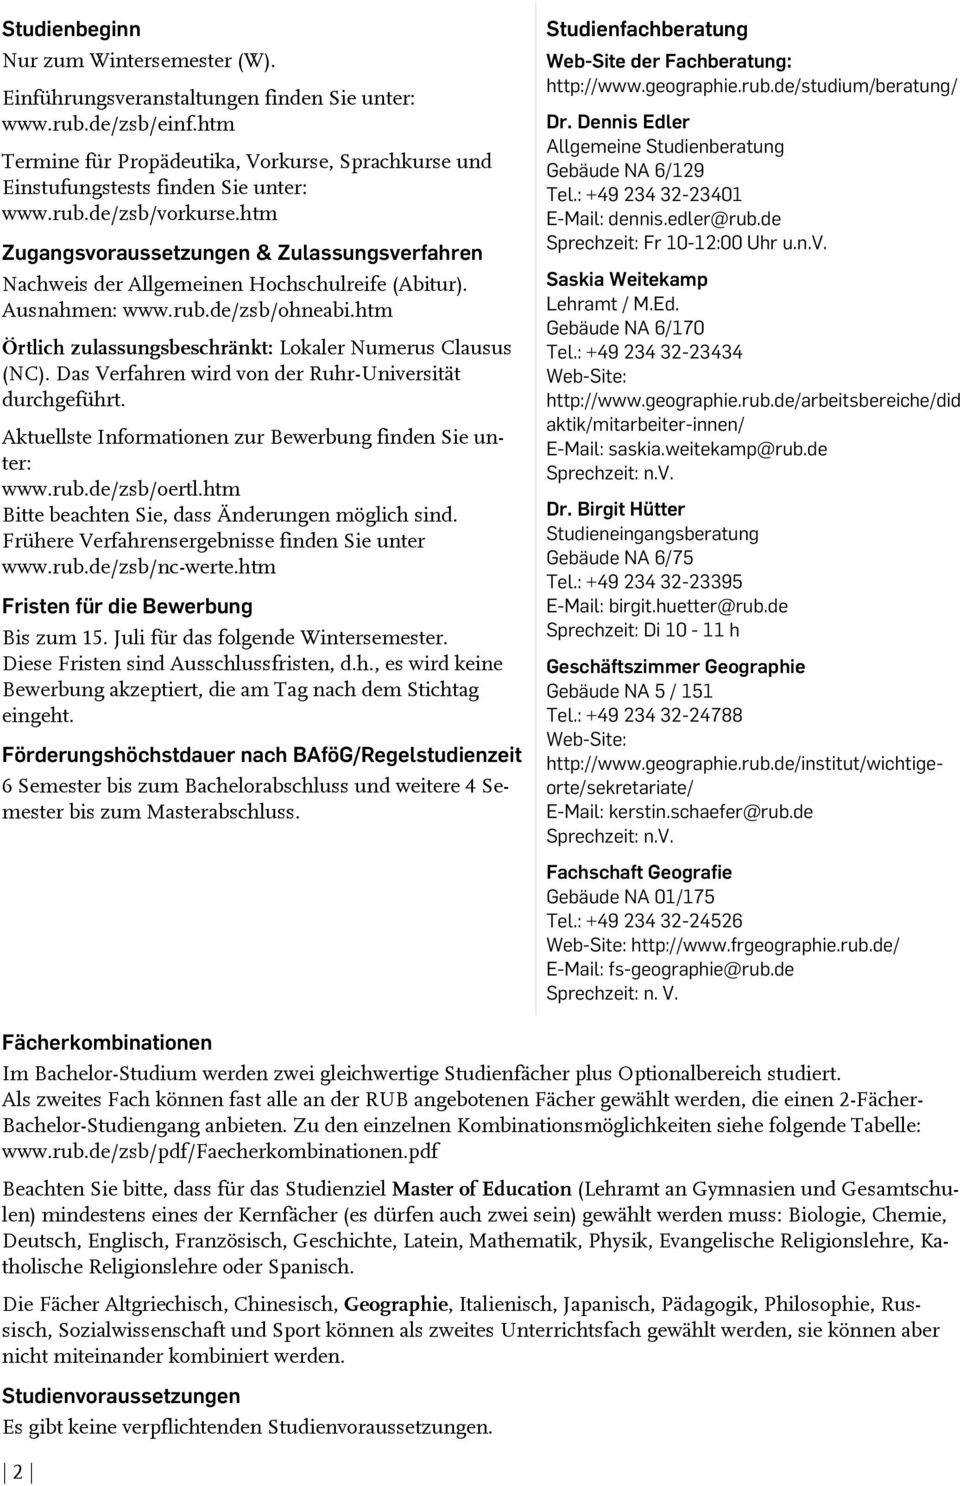 htm Zugangsvoraussetzungen & Zulassungsverfahren Nachweis der Allgemeinen Hochschulreife (Abitur). Ausnahmen: www.rub.de/zsb/ohneabi.htm Örtlich zulassungsbeschränkt: Lokaler Numerus Clausus (NC).